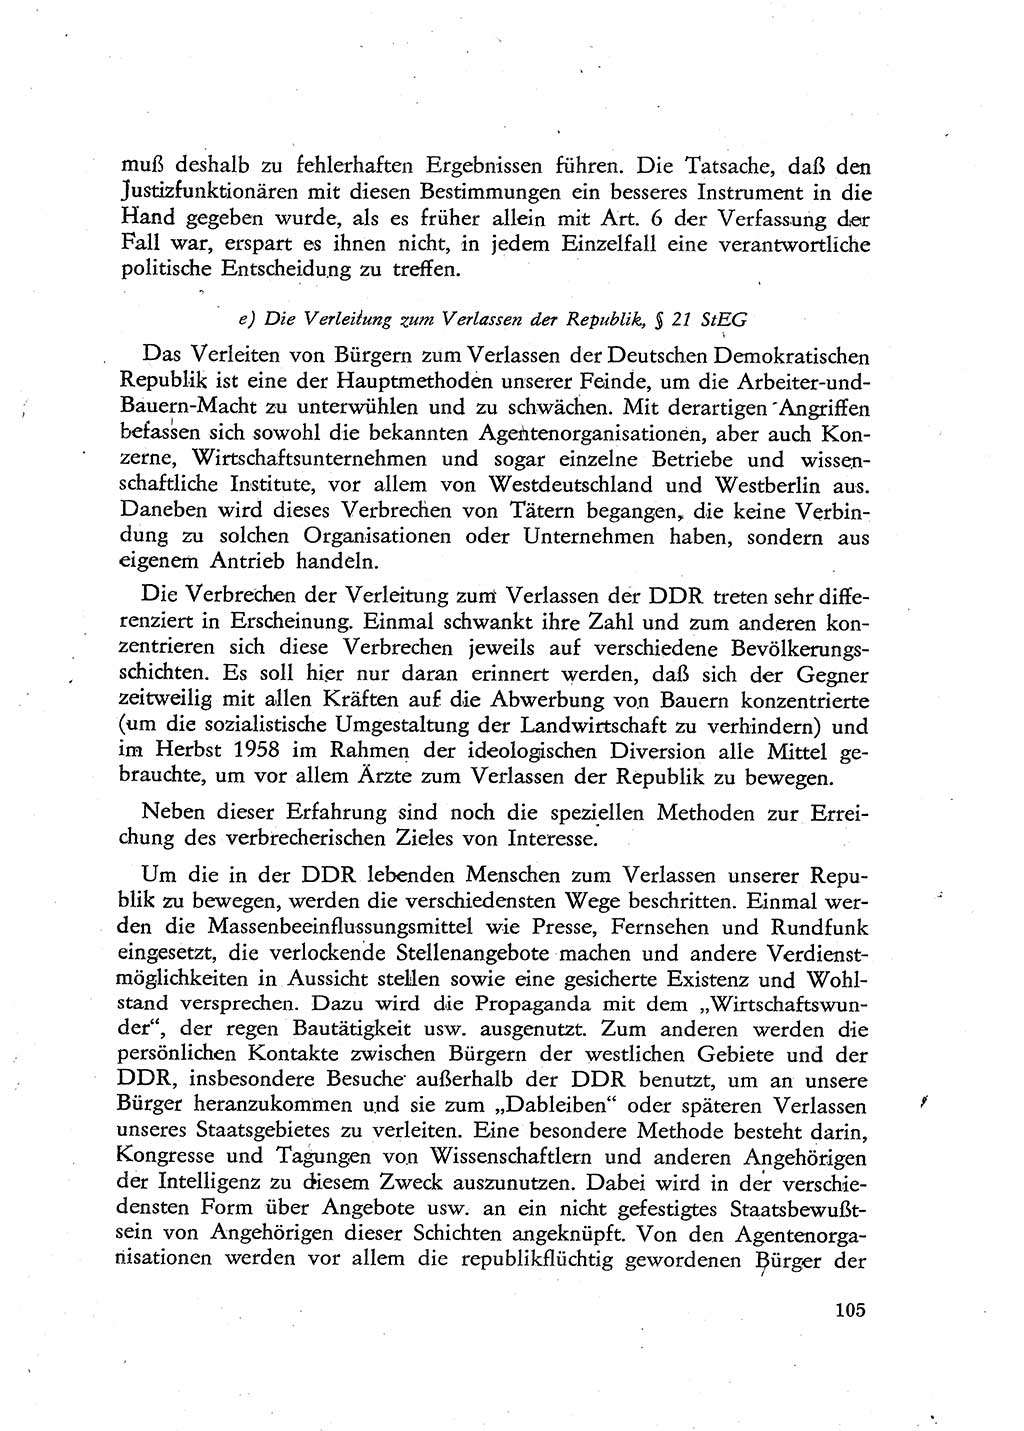 Beiträge zum Strafrecht [Deutsche Demokratische Republik (DDR)], Staatsverbrechen 1959, Seite 105 (Beitr. Strafr. DDR St.-Verbr. 1959, S. 105)